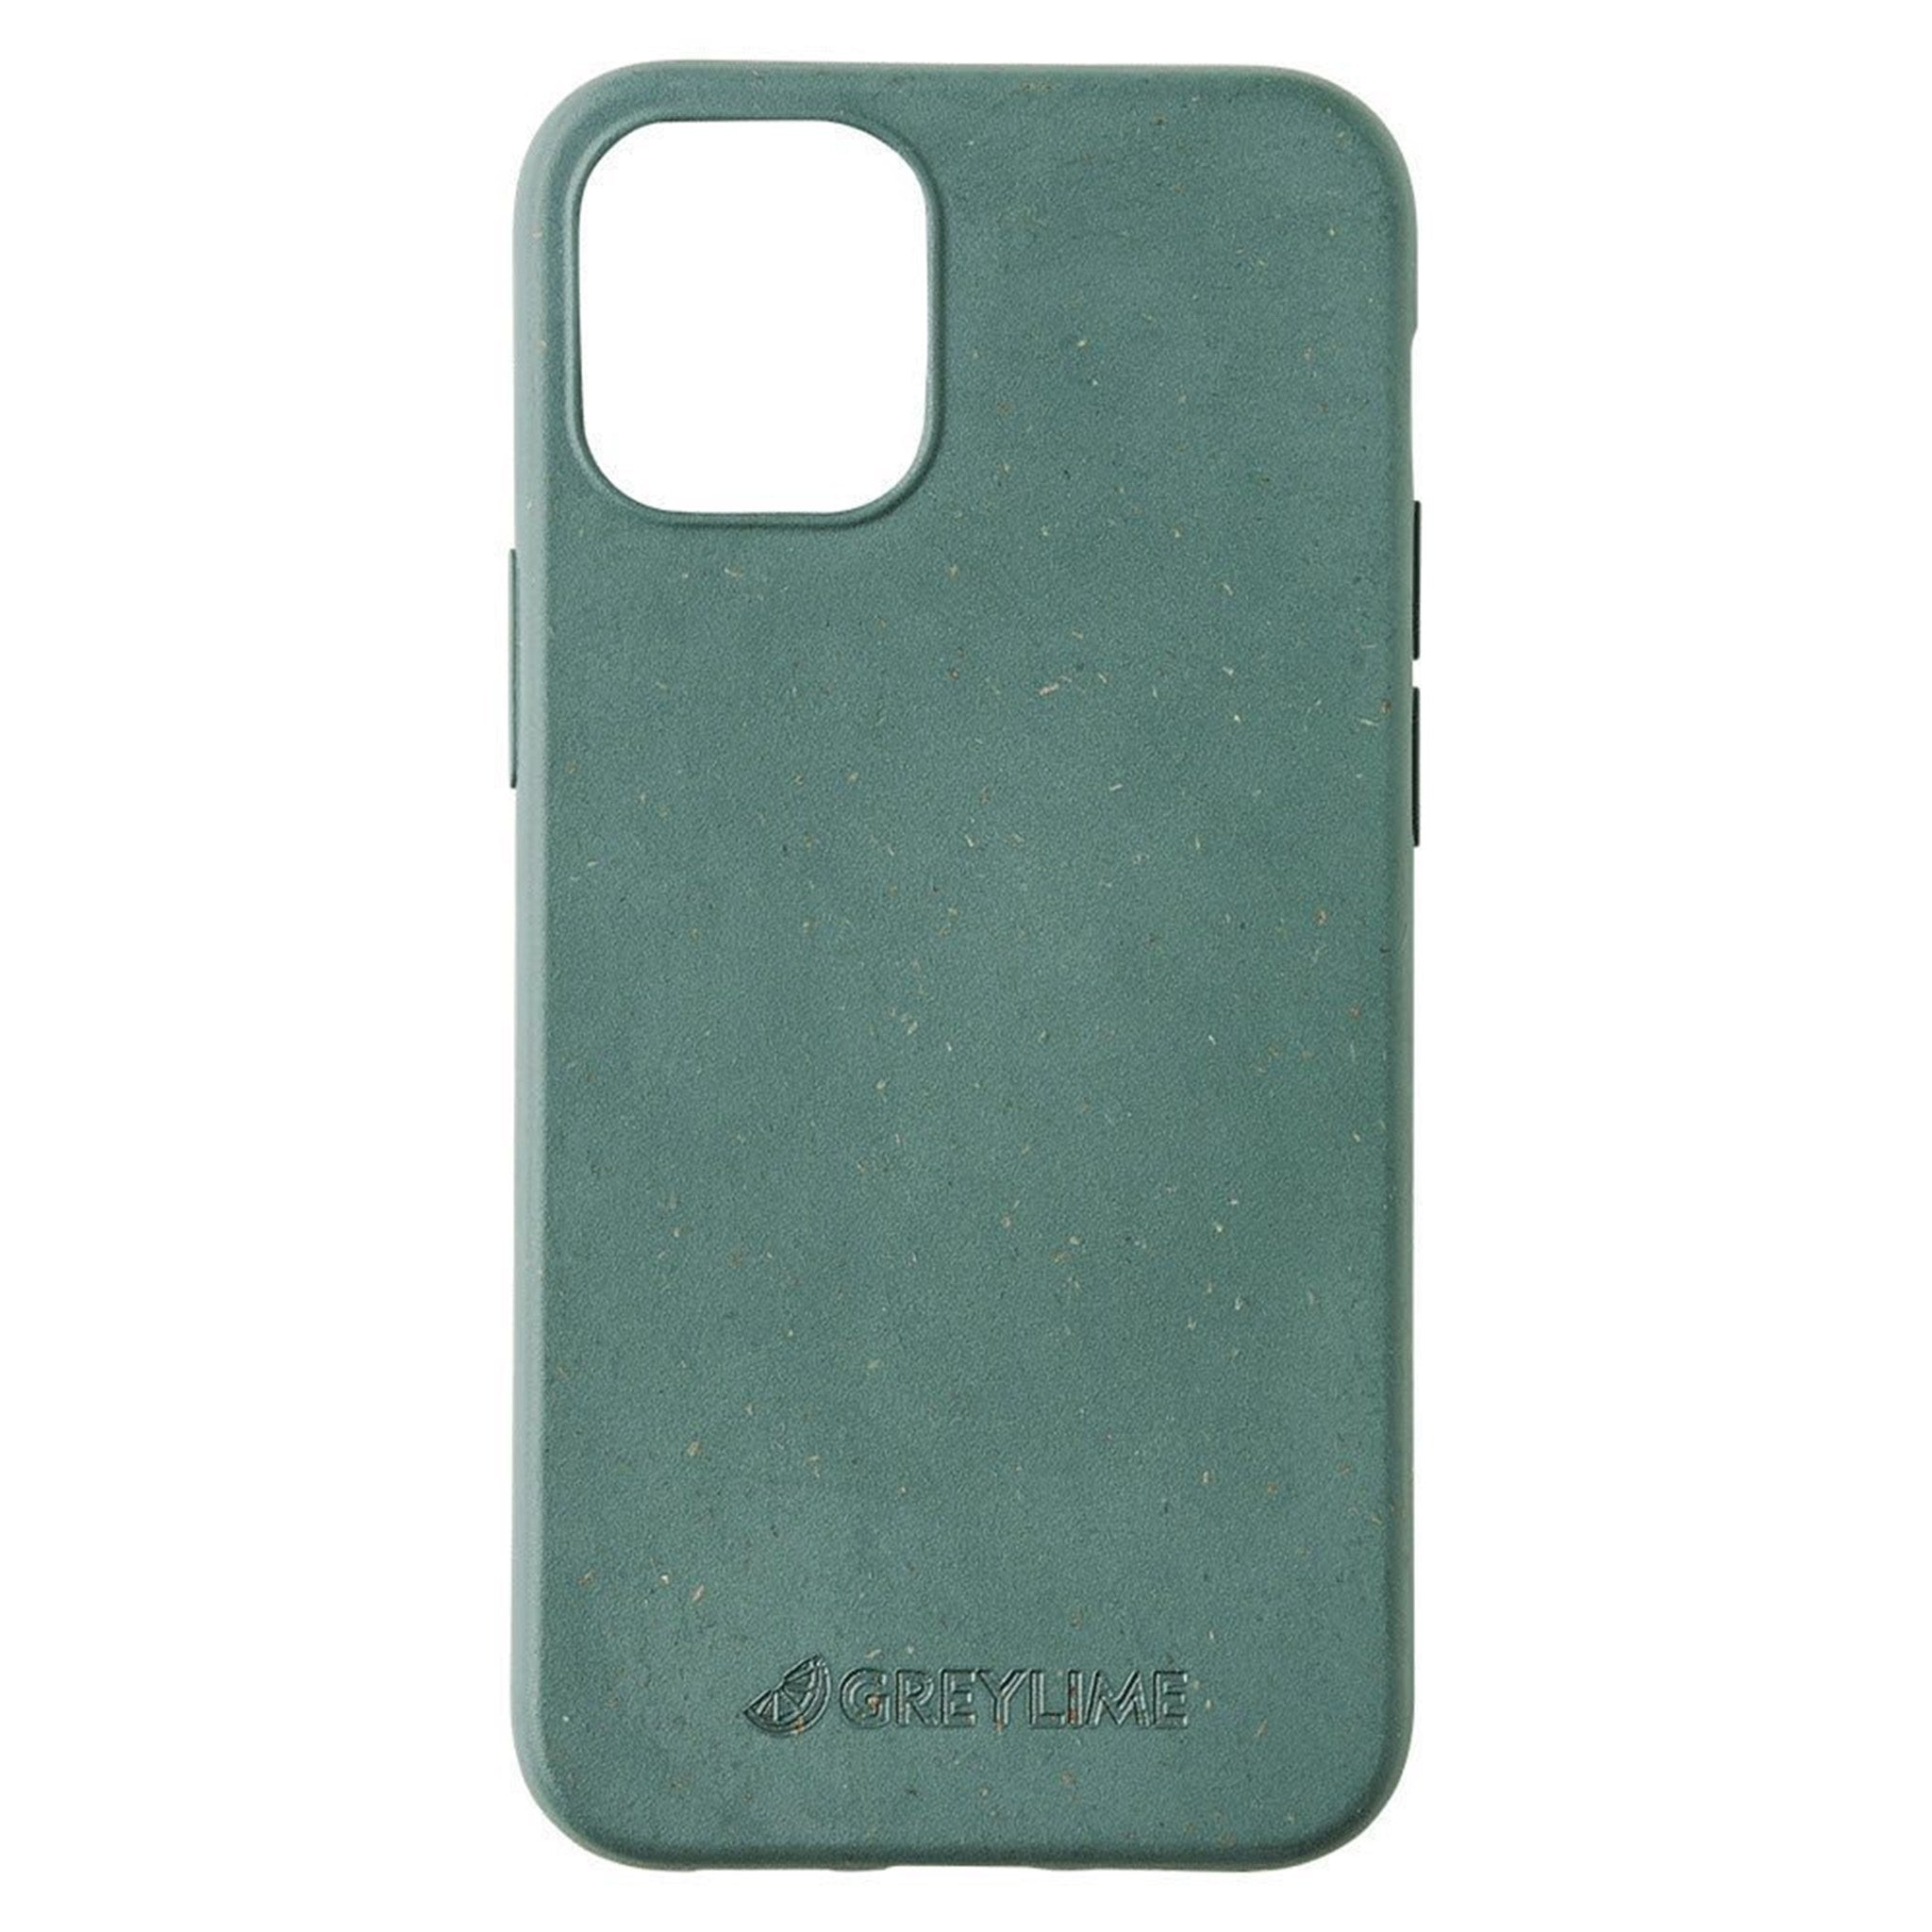 GreyLime-iPhone-12-Mini-Biodegdrable-Cover-Dark-Green-COIP12S04-V3.jpg